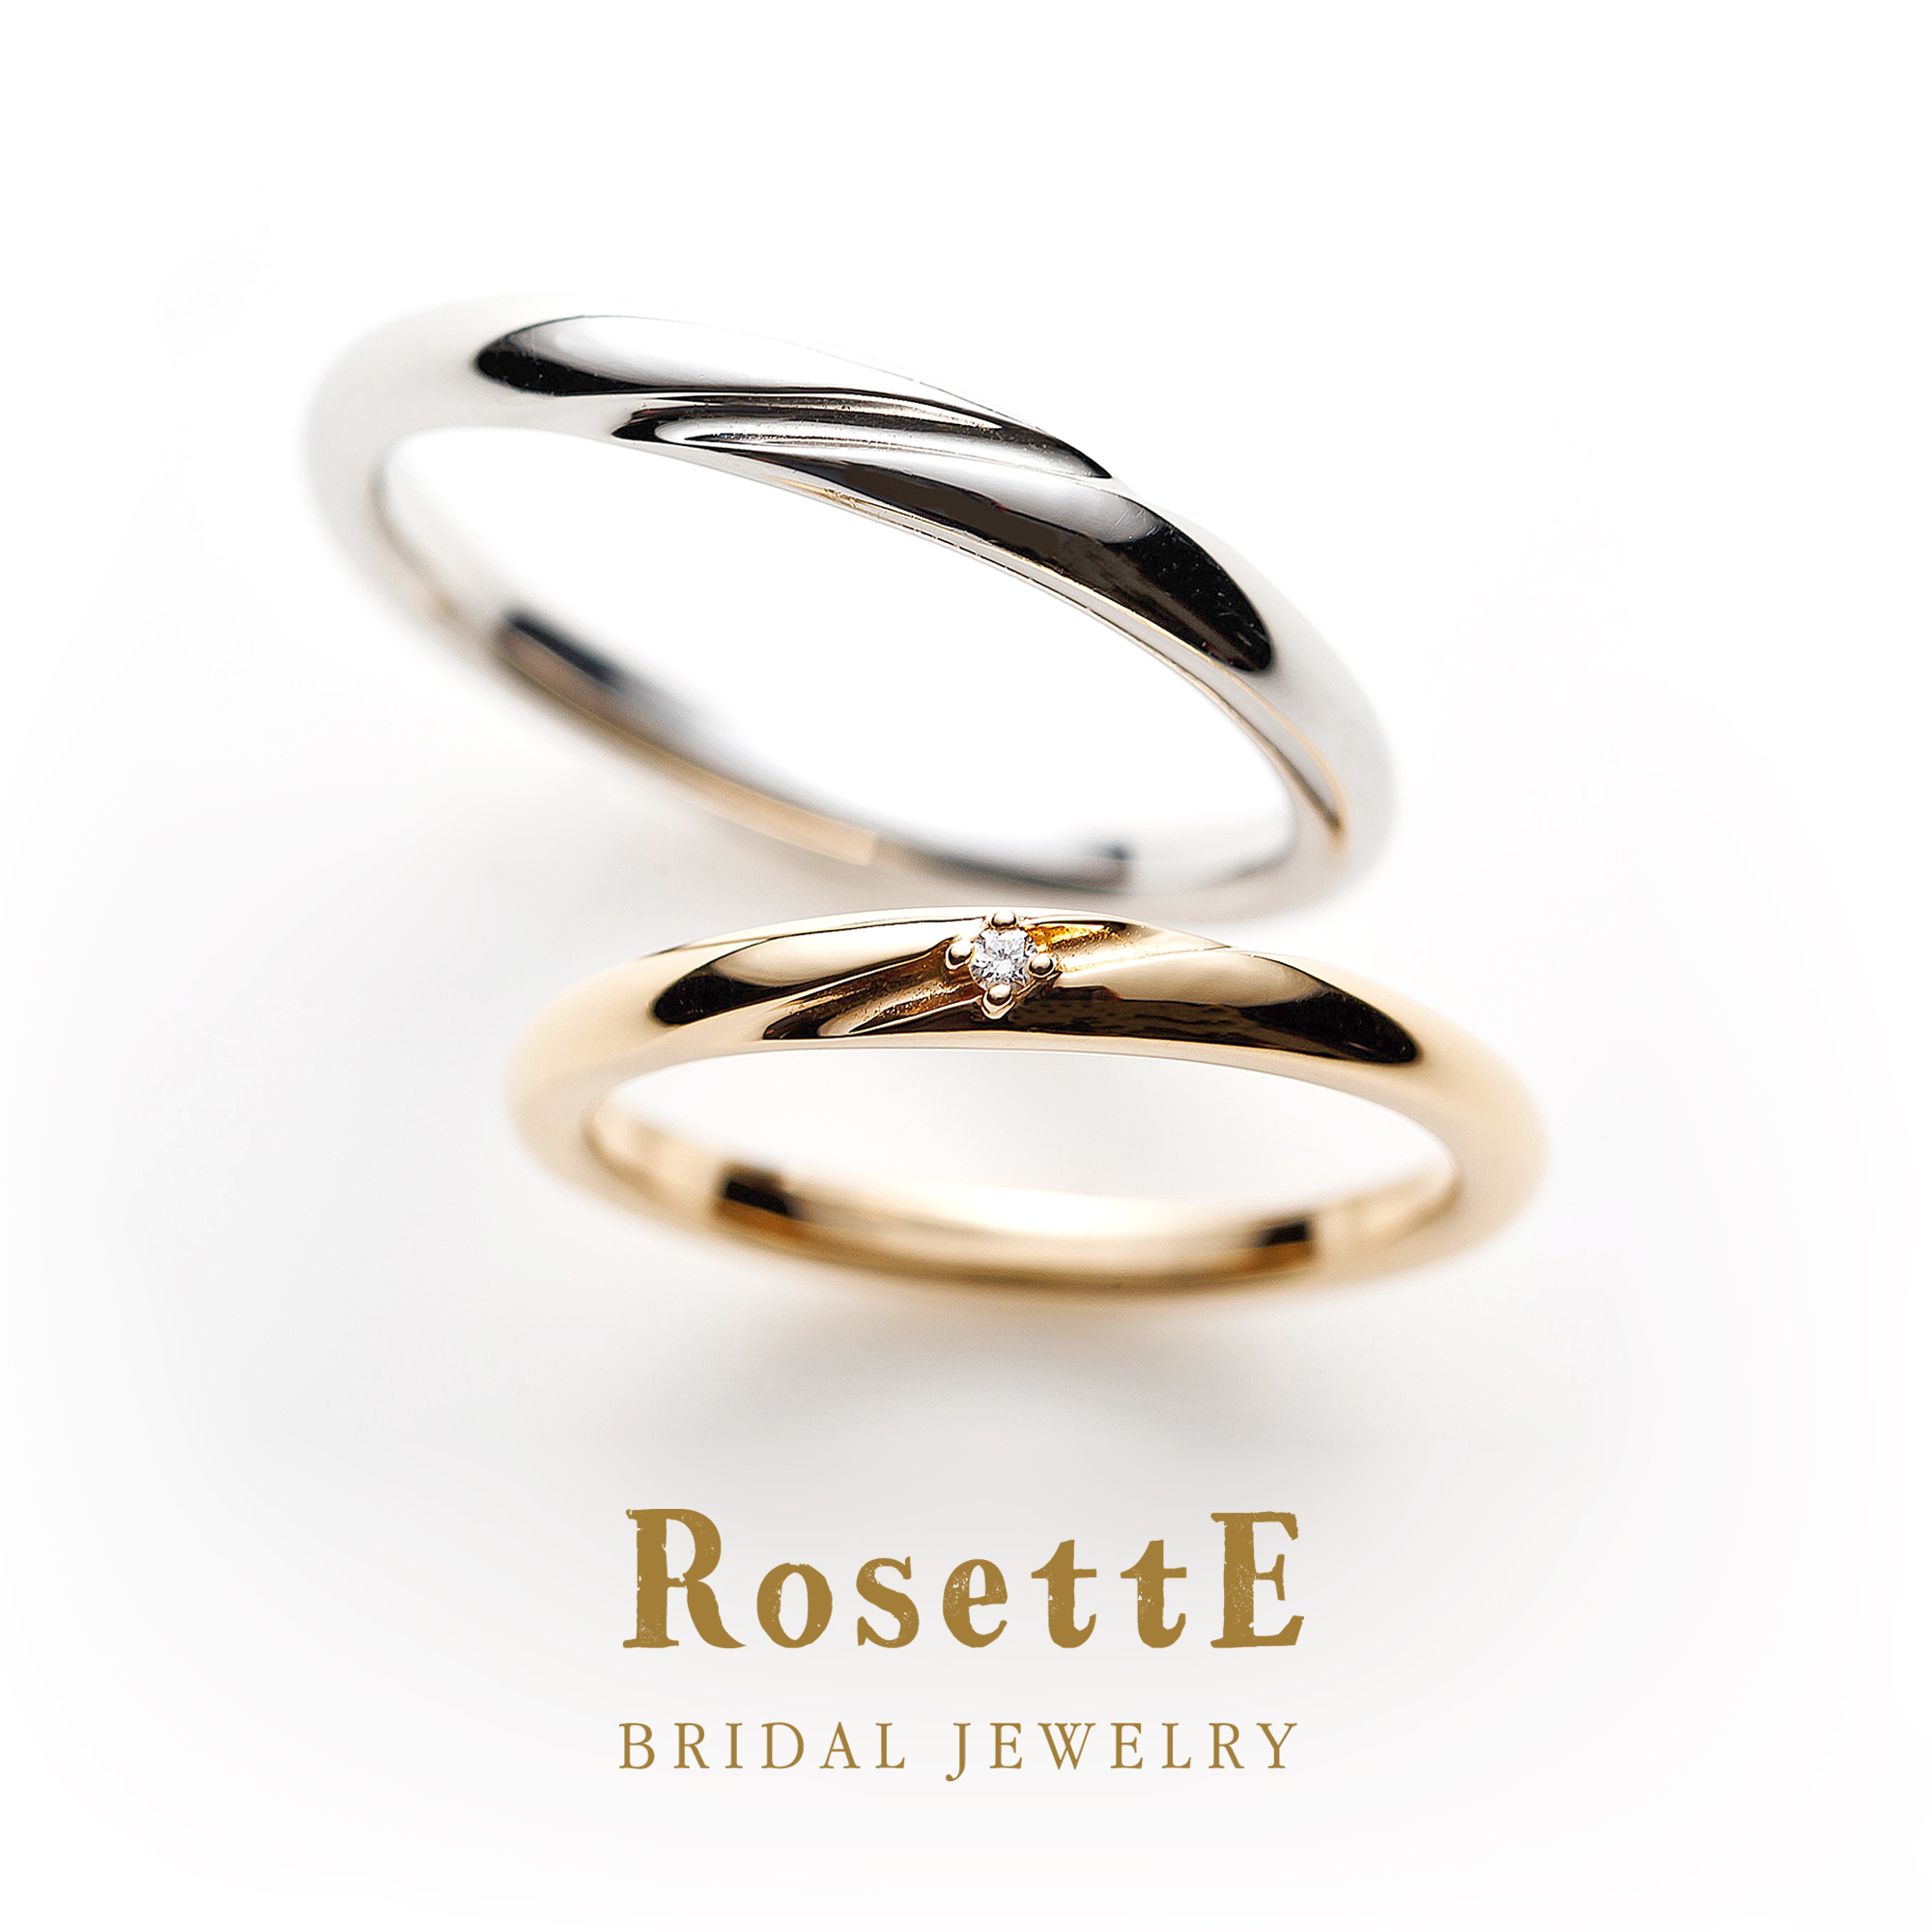 RosettEロゼットの結婚指輪でマリッジリングのDESTINATION目的地